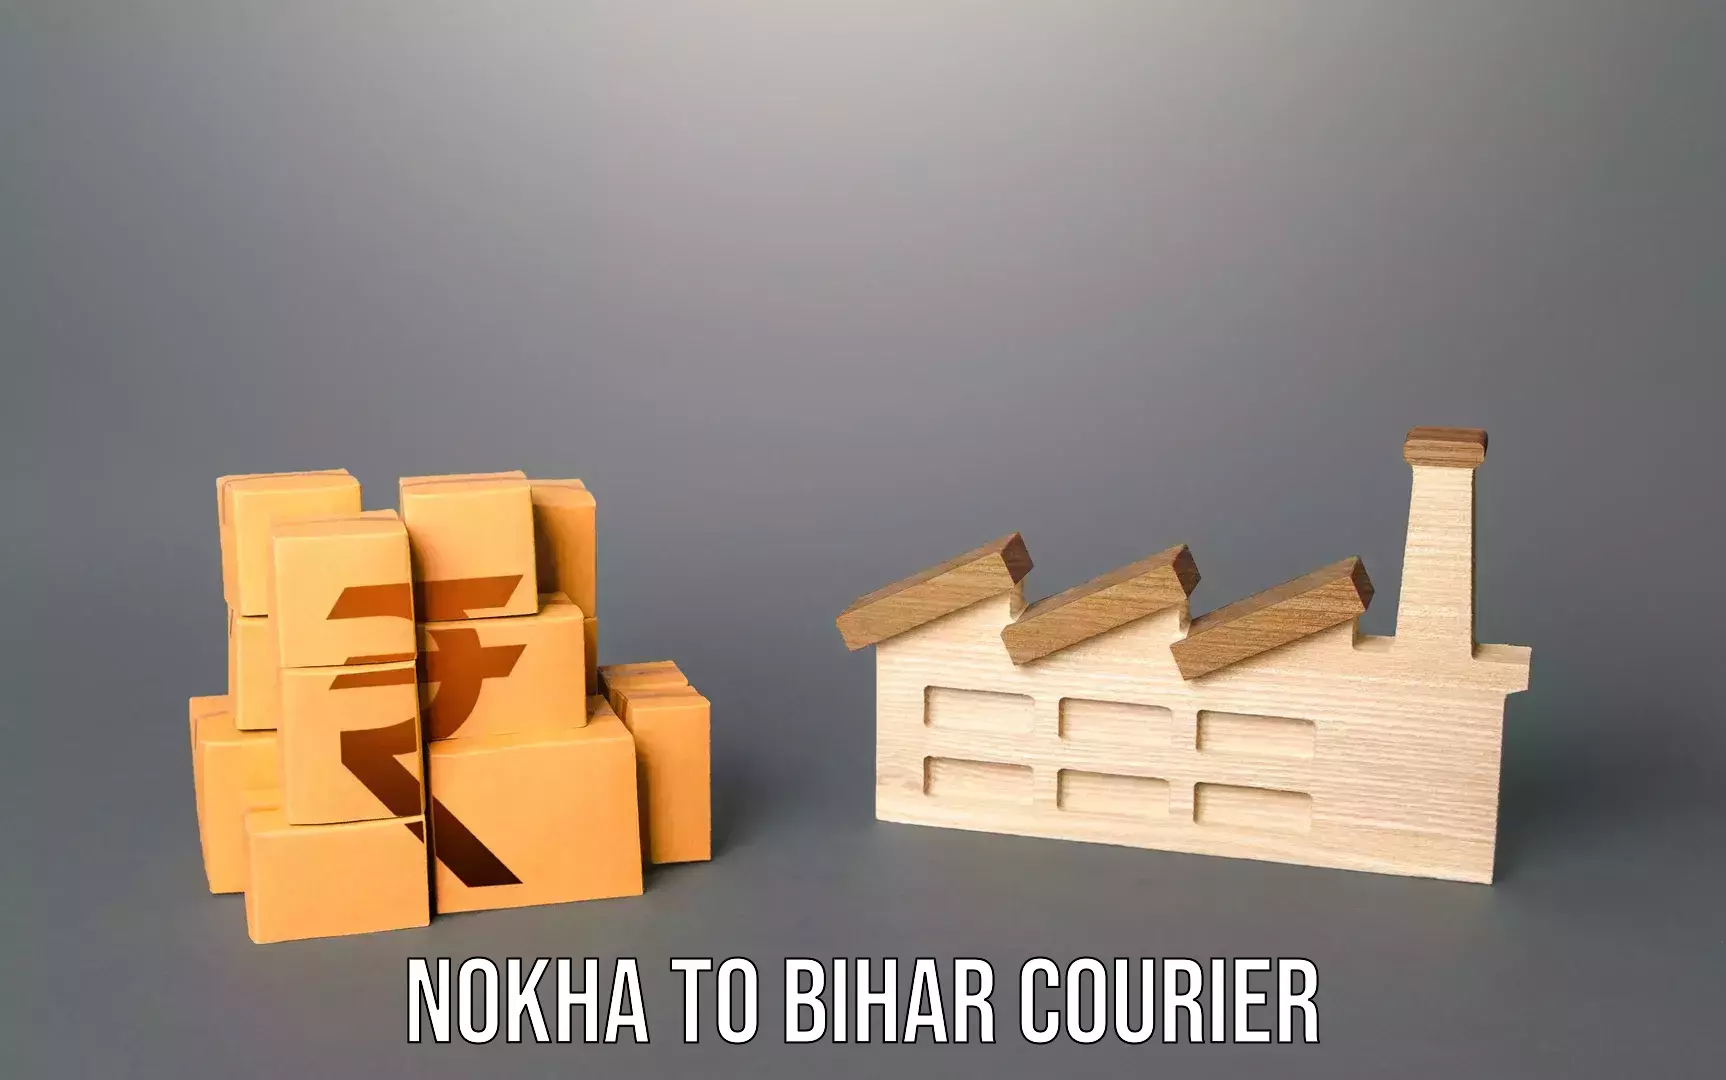 Luggage shipping service Nokha to Bihar